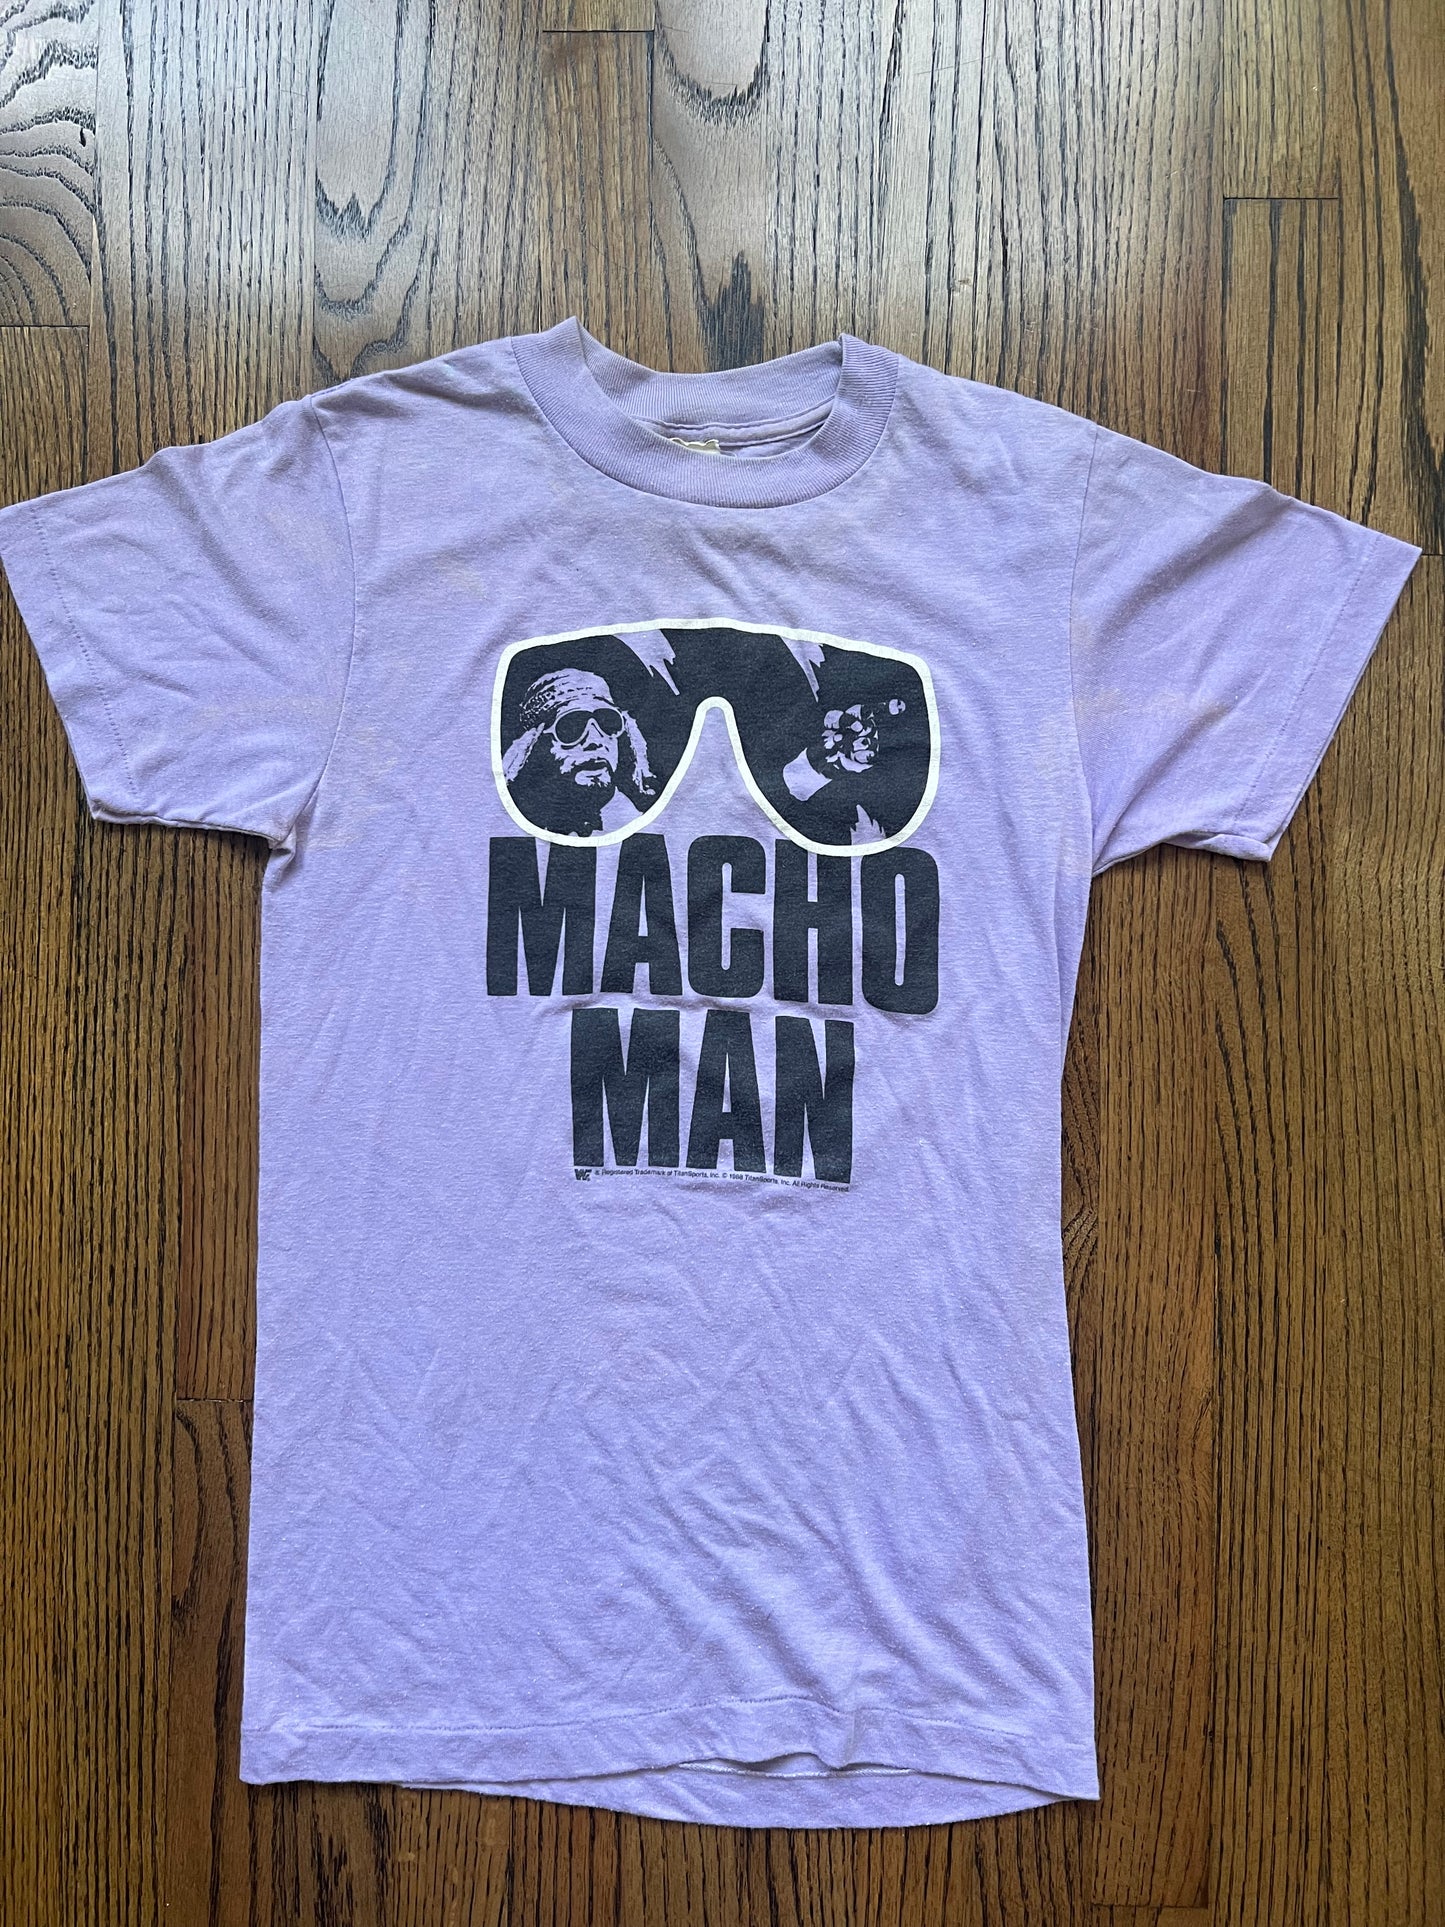 1988 WWF “Macho Man” Randy Savage shirt